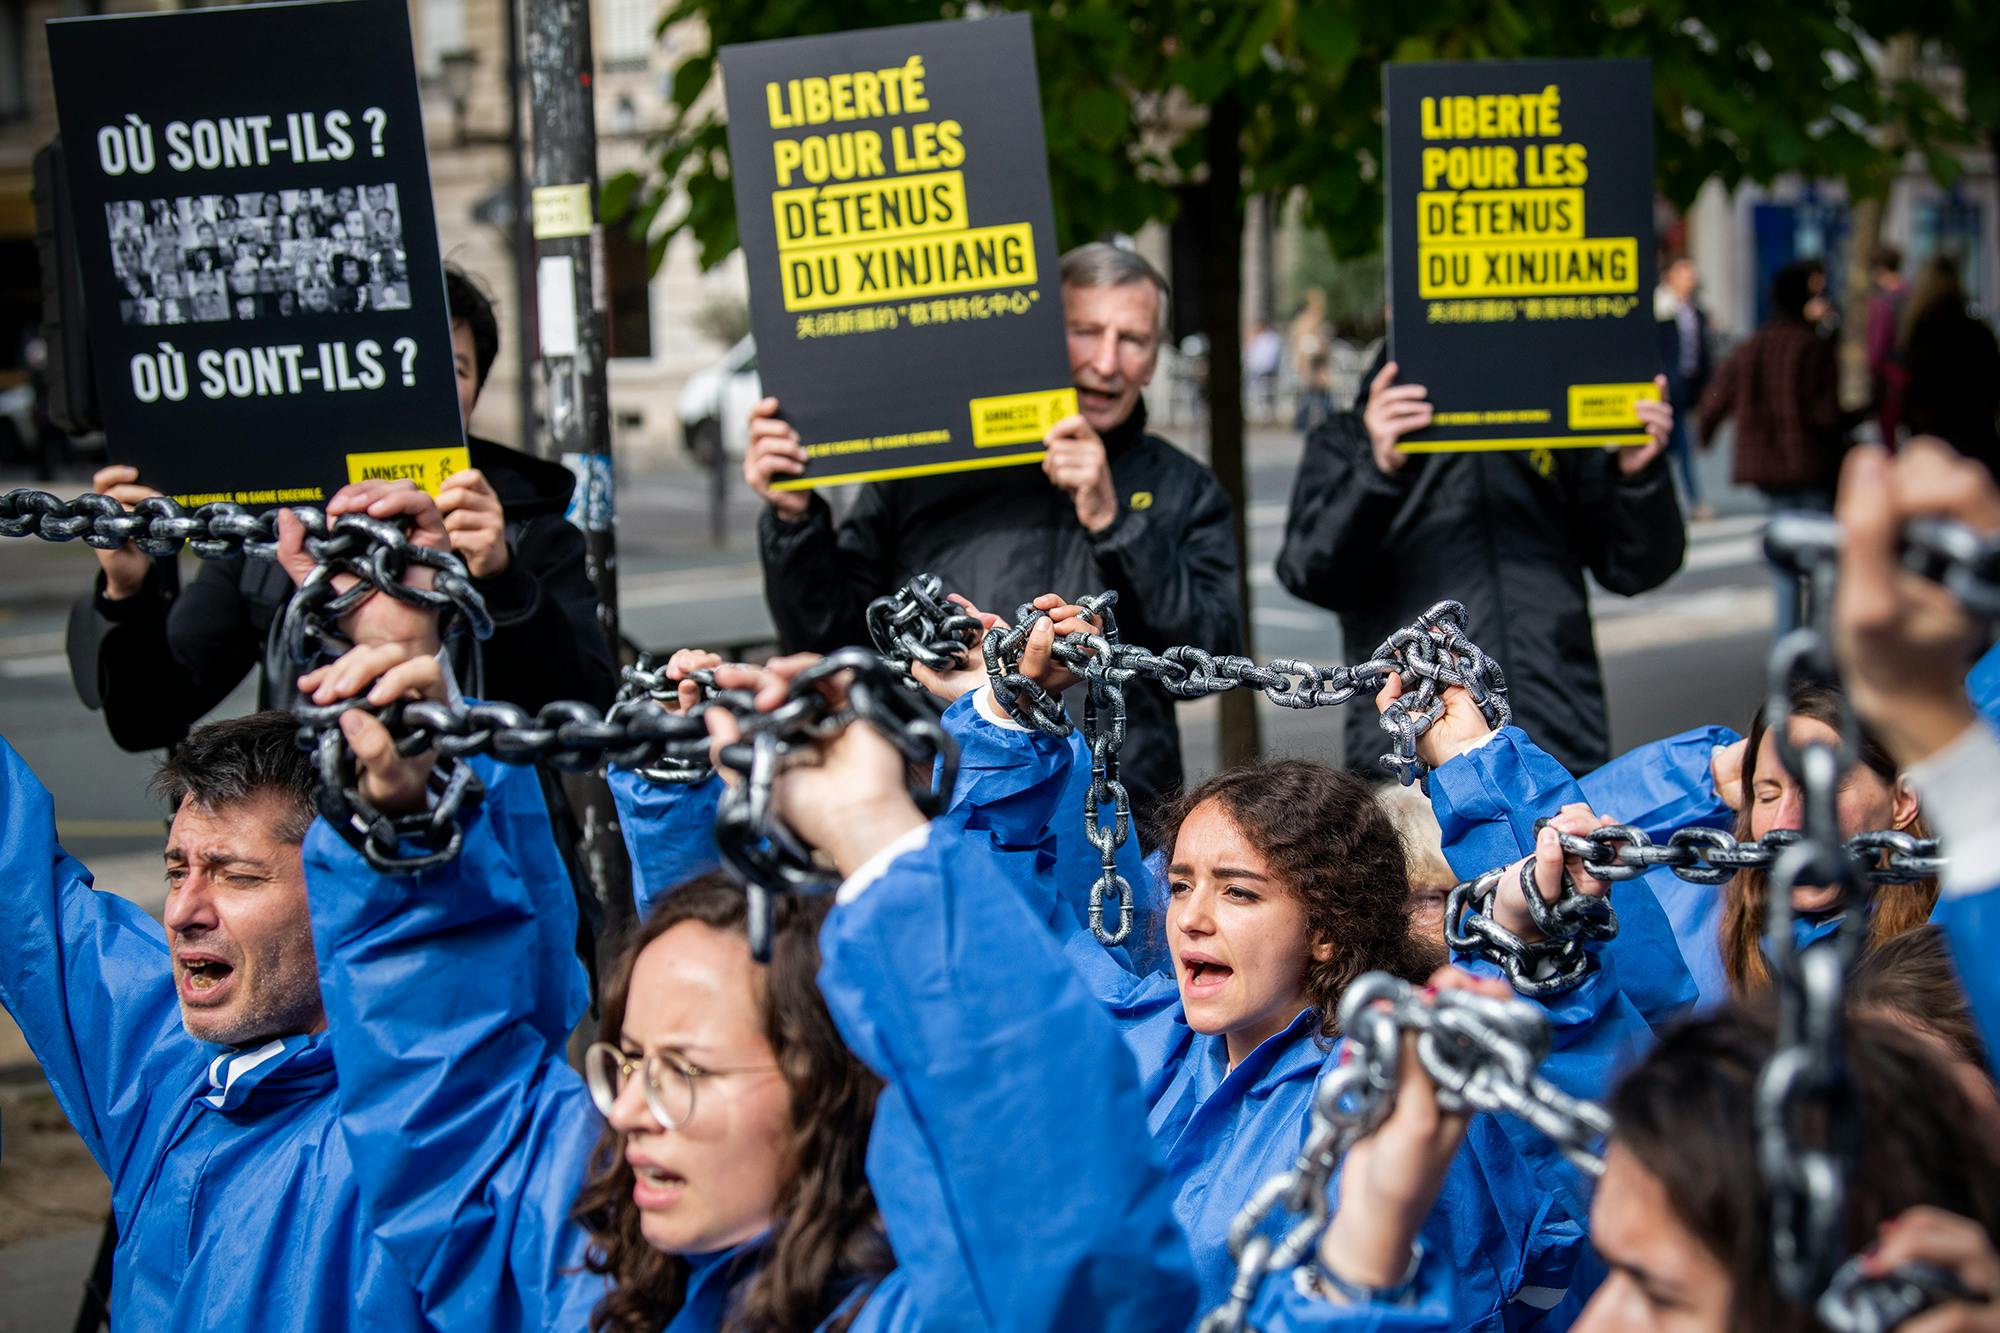 Remise de pétition pour libération des minorités musulmanes détenues dans le Xinjiang. Paris